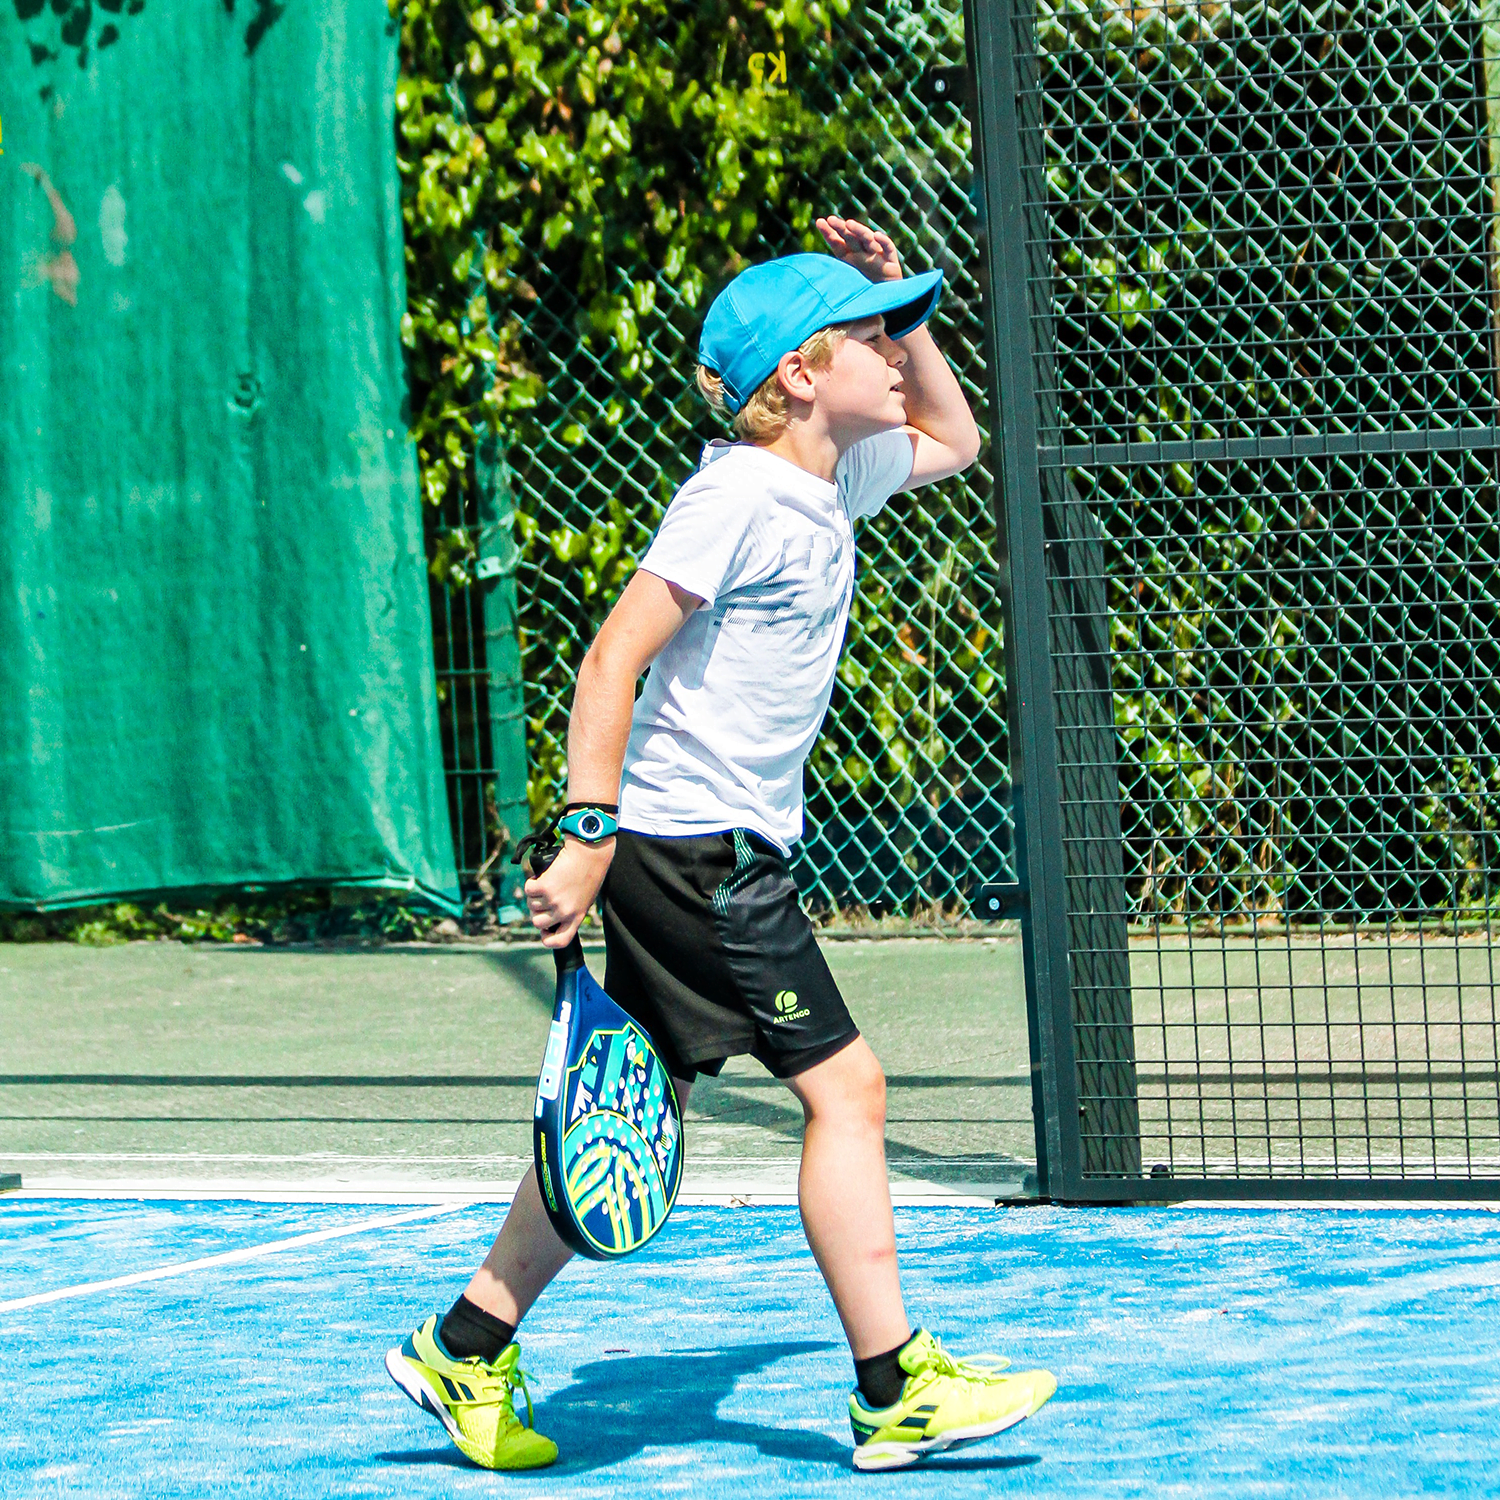 Cours Tennis enfant - 12 ans